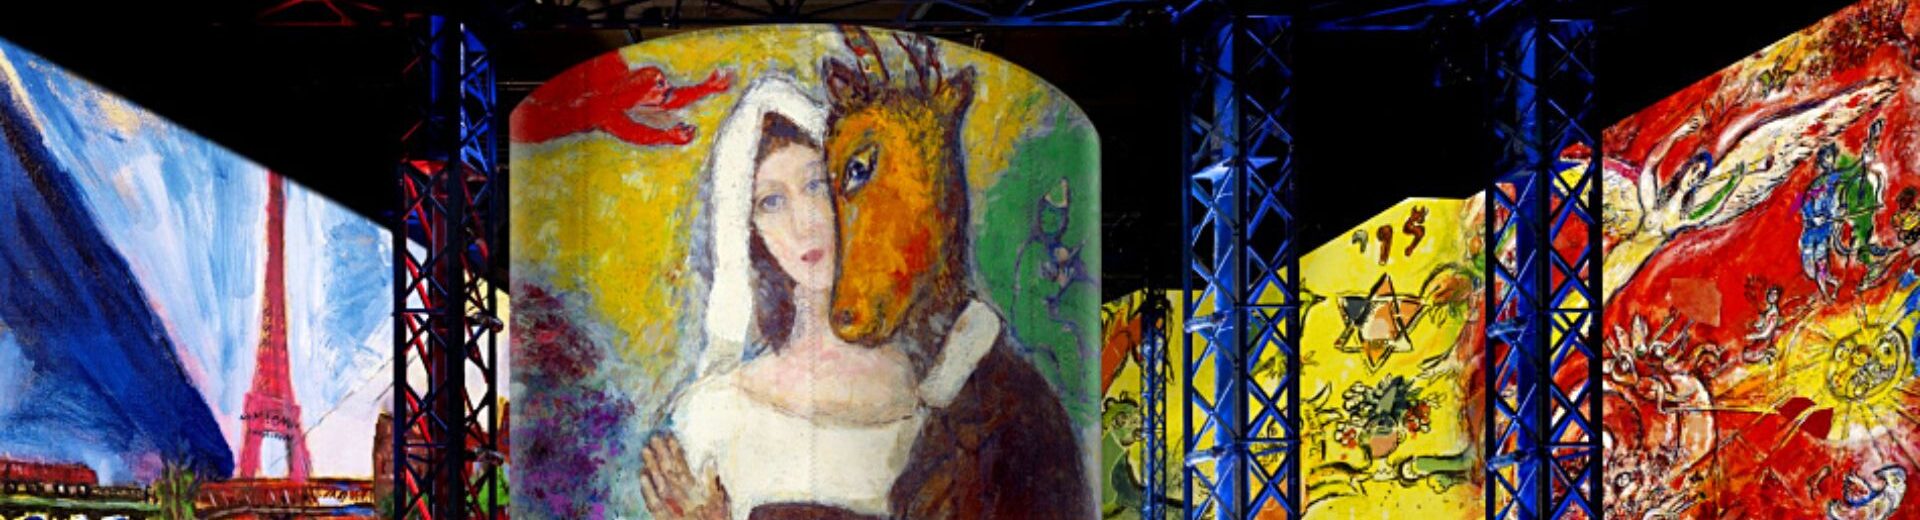 Expositions Chagall/Klee à l’Atelier des Lumières !